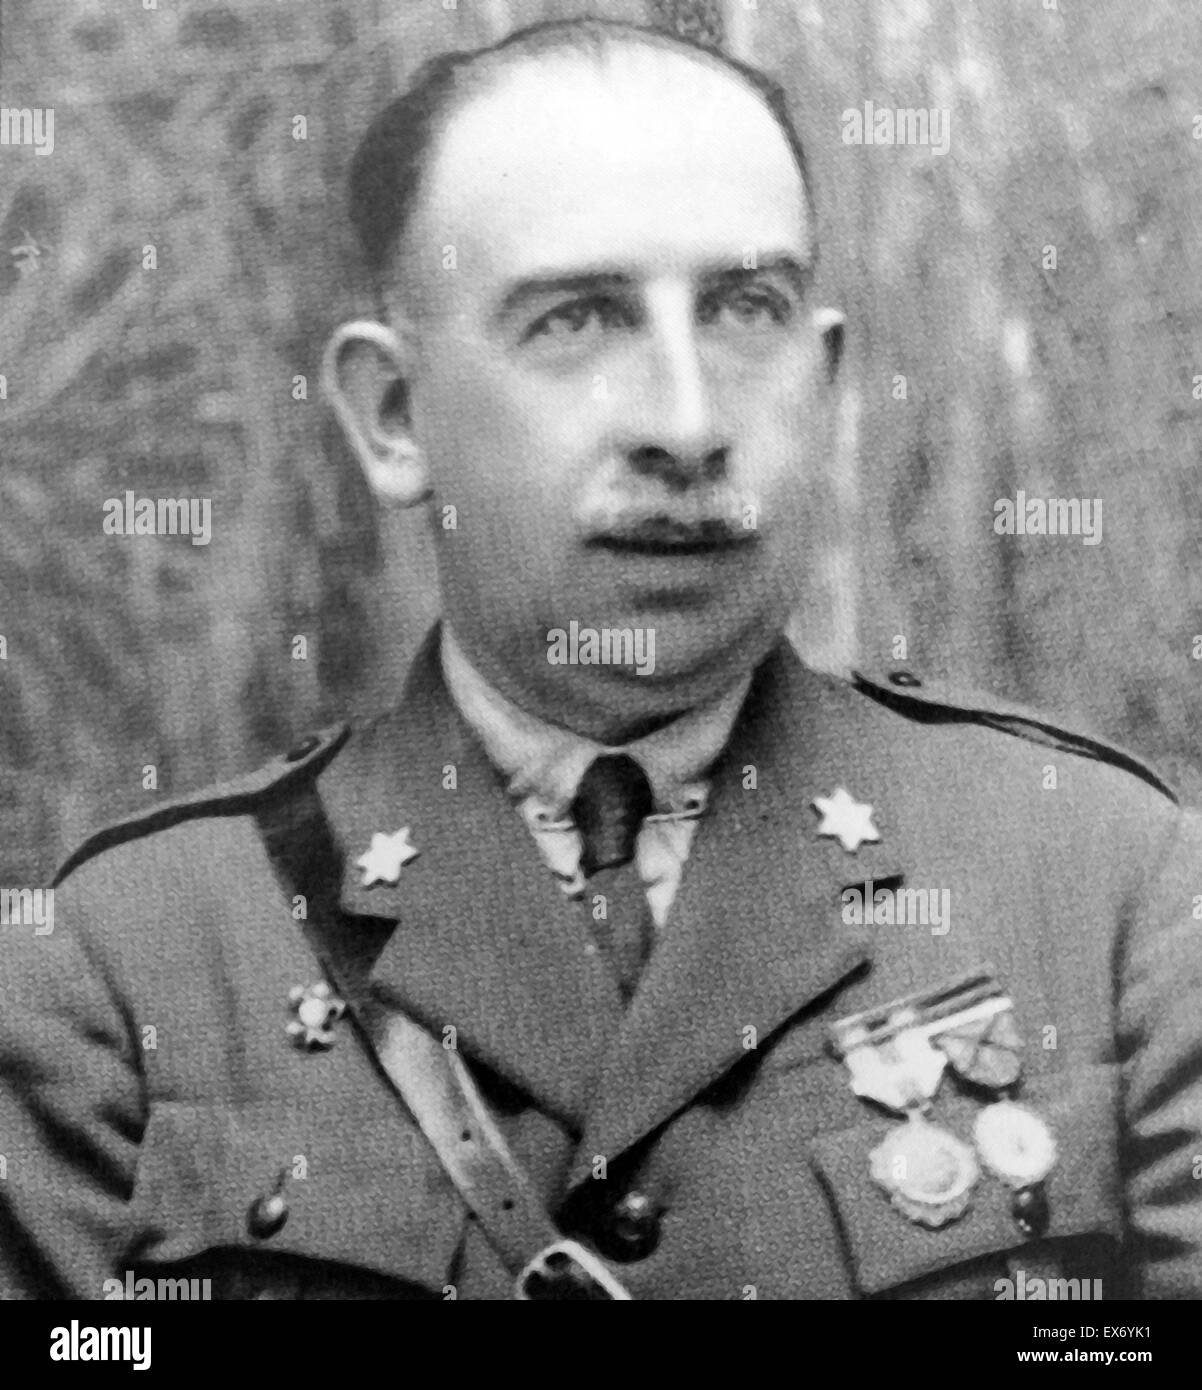 Luis Orgaz Yoldi (28 de mayo de 1881, Vitoria - 31 de enero de 1946, Madrid) fue un general español que era una figura principal en el lado nacionalista en la Guerra Civil Española. Posteriormente se convirtió en un crítico del régimen de Francisco Franco Foto de stock